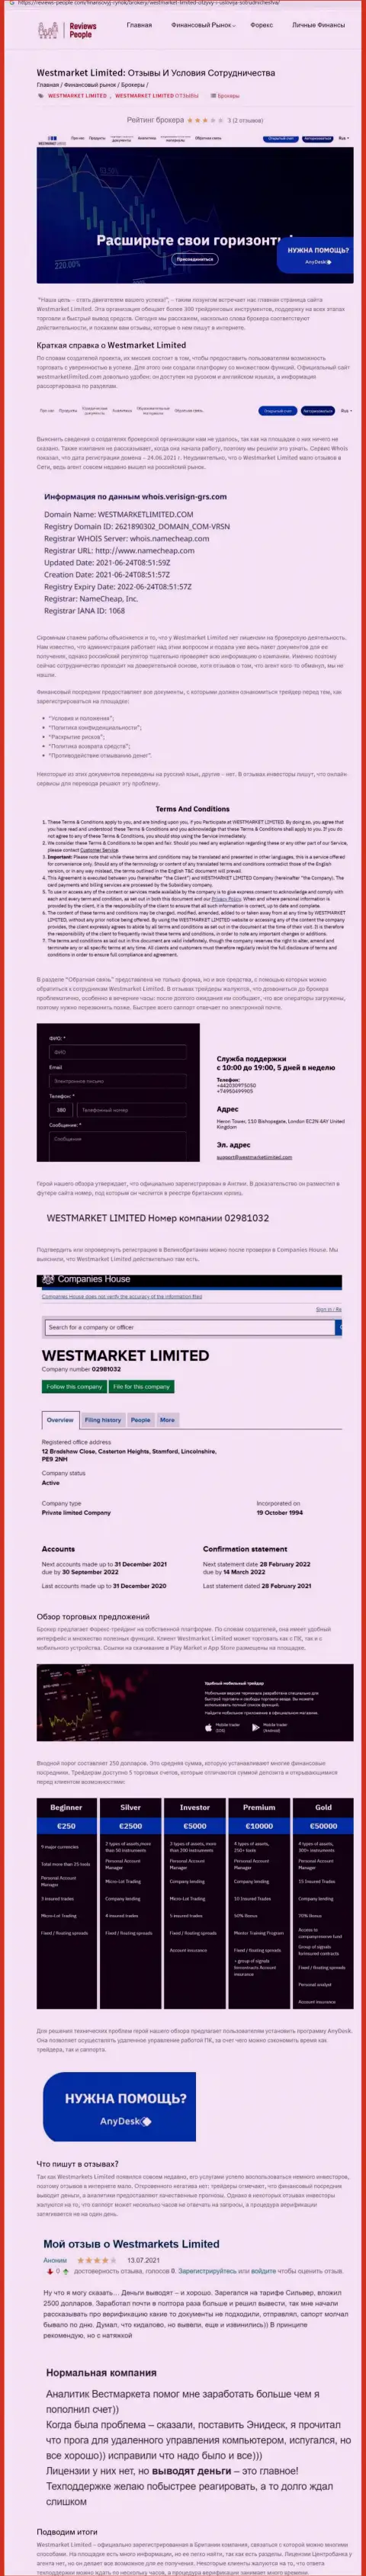 Обзорный материал о forex брокере WestMarketLimited на информационном ресурсе Ревиевс-Пеопле Ком